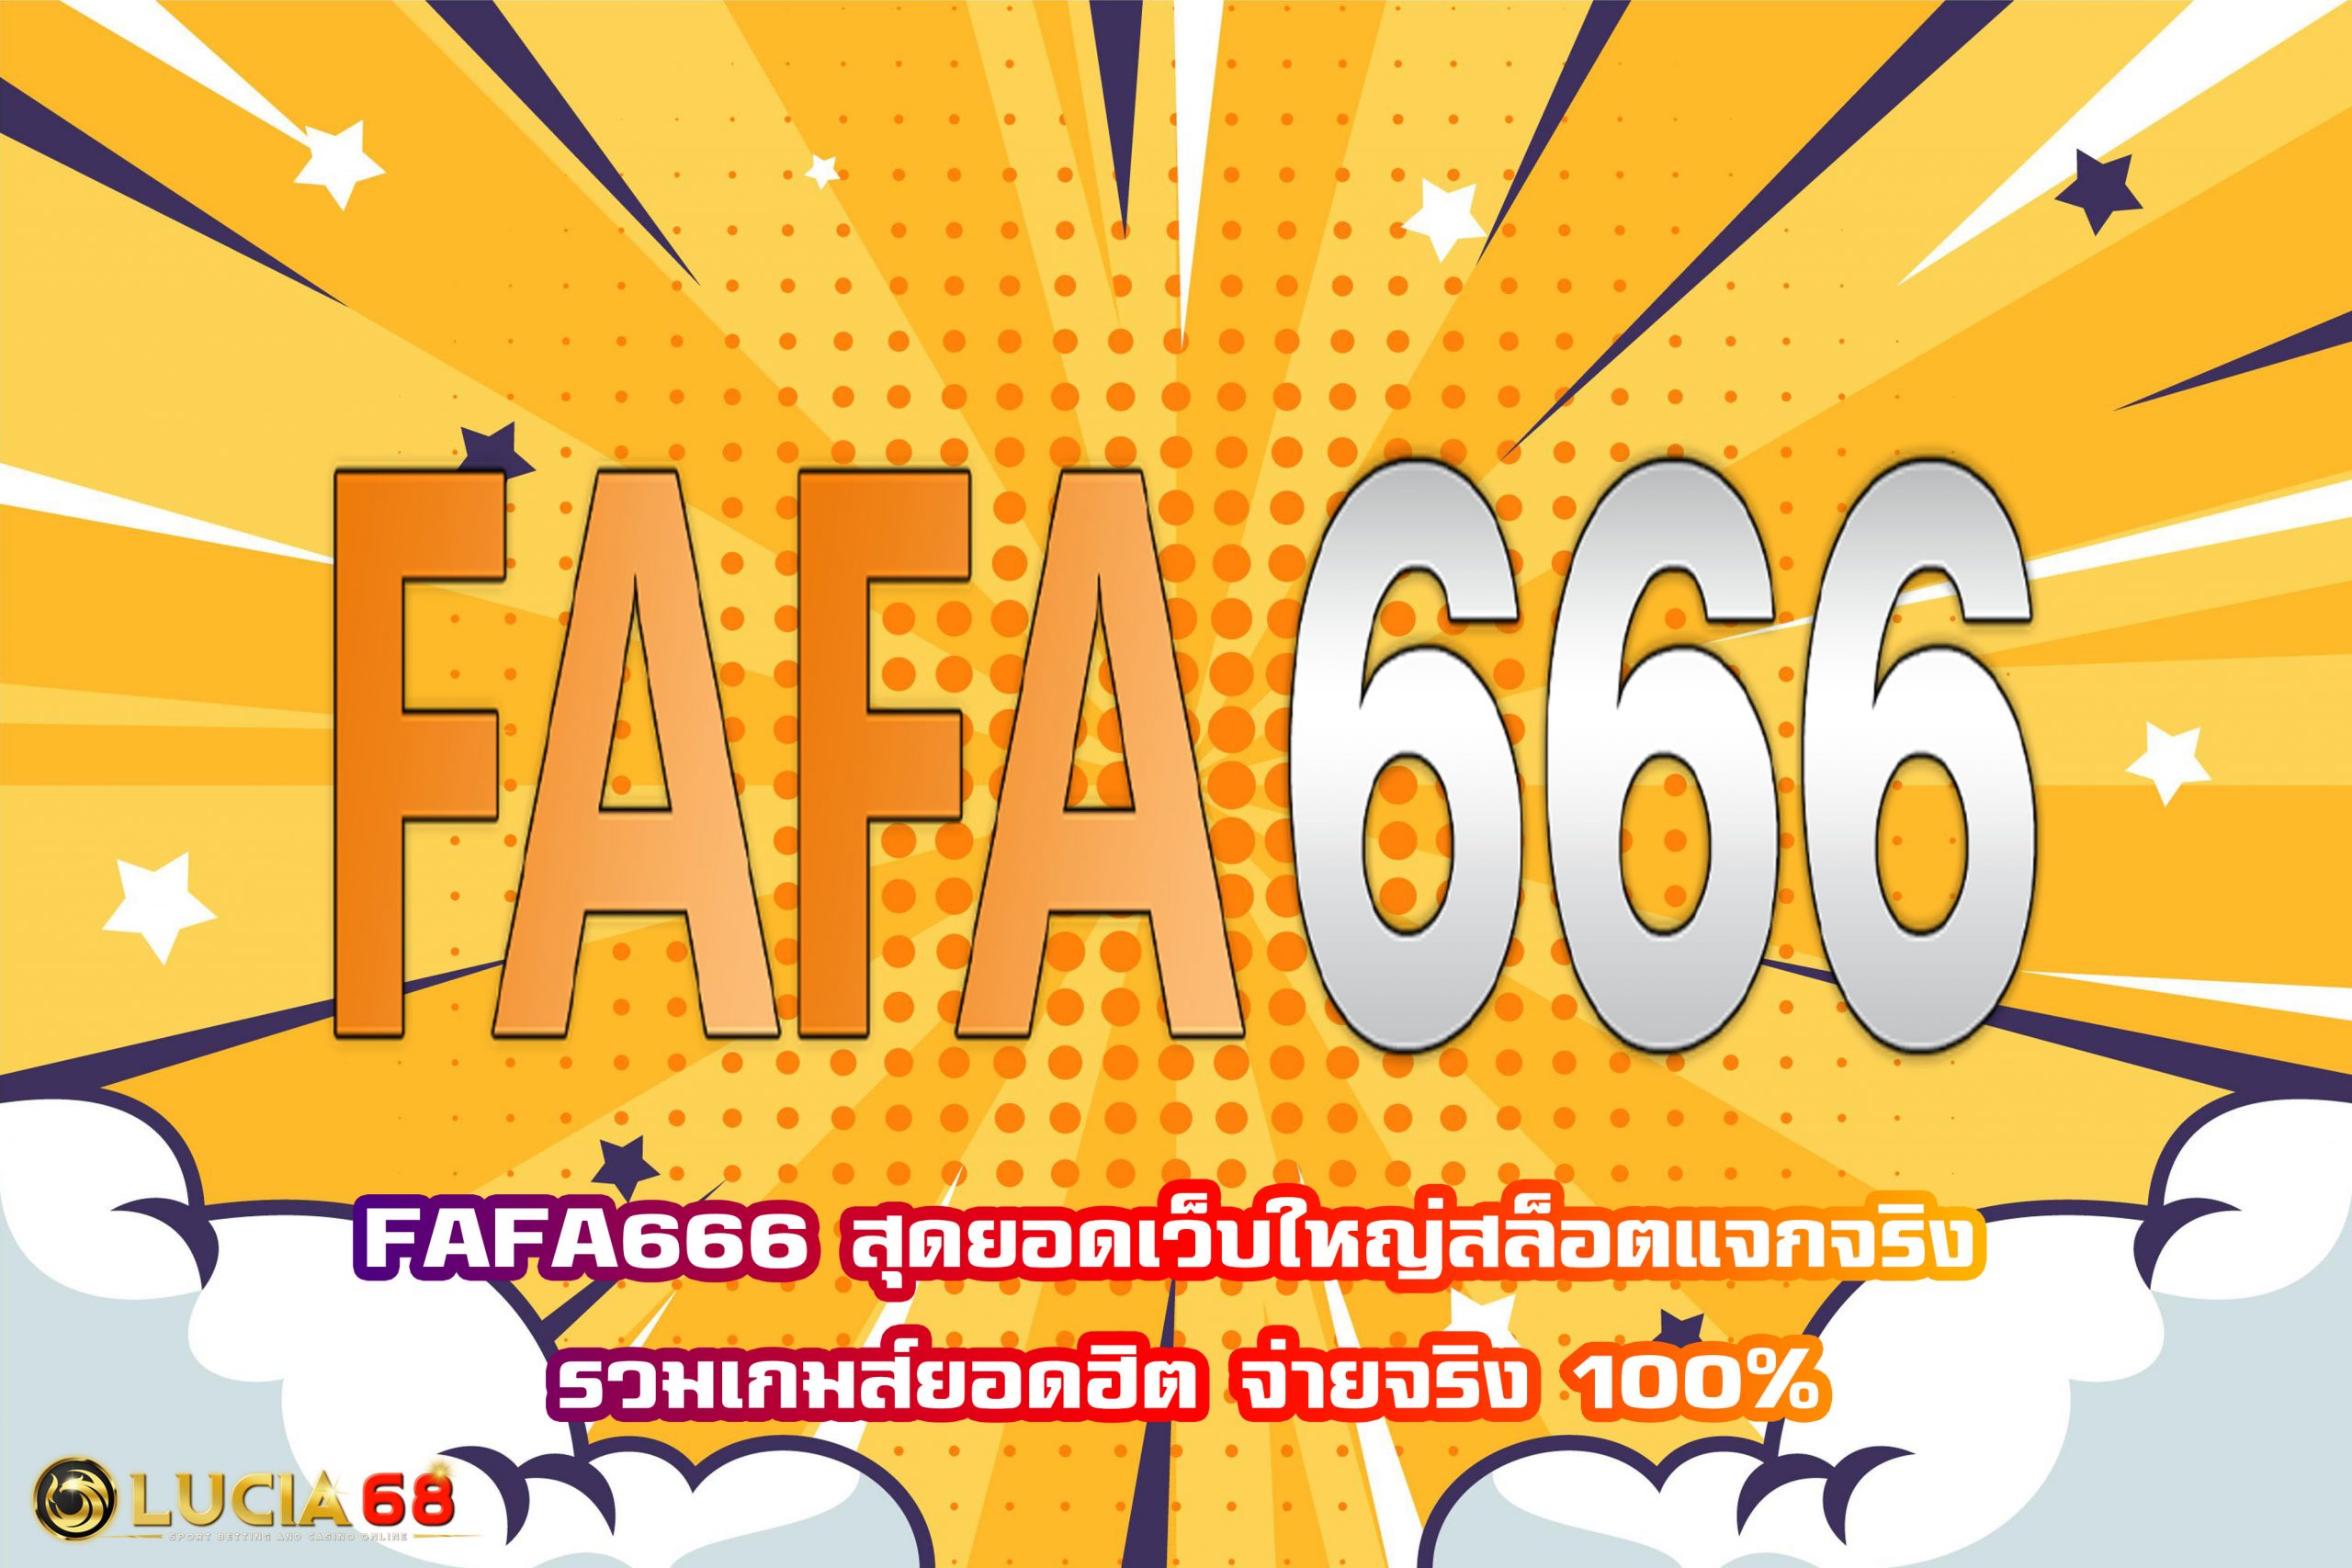 FAFA666 สุดยอดเว็บใหญ่สล็อตแจกจริง รวมเกมส์ยอดฮิต จ่ายจริง 100%